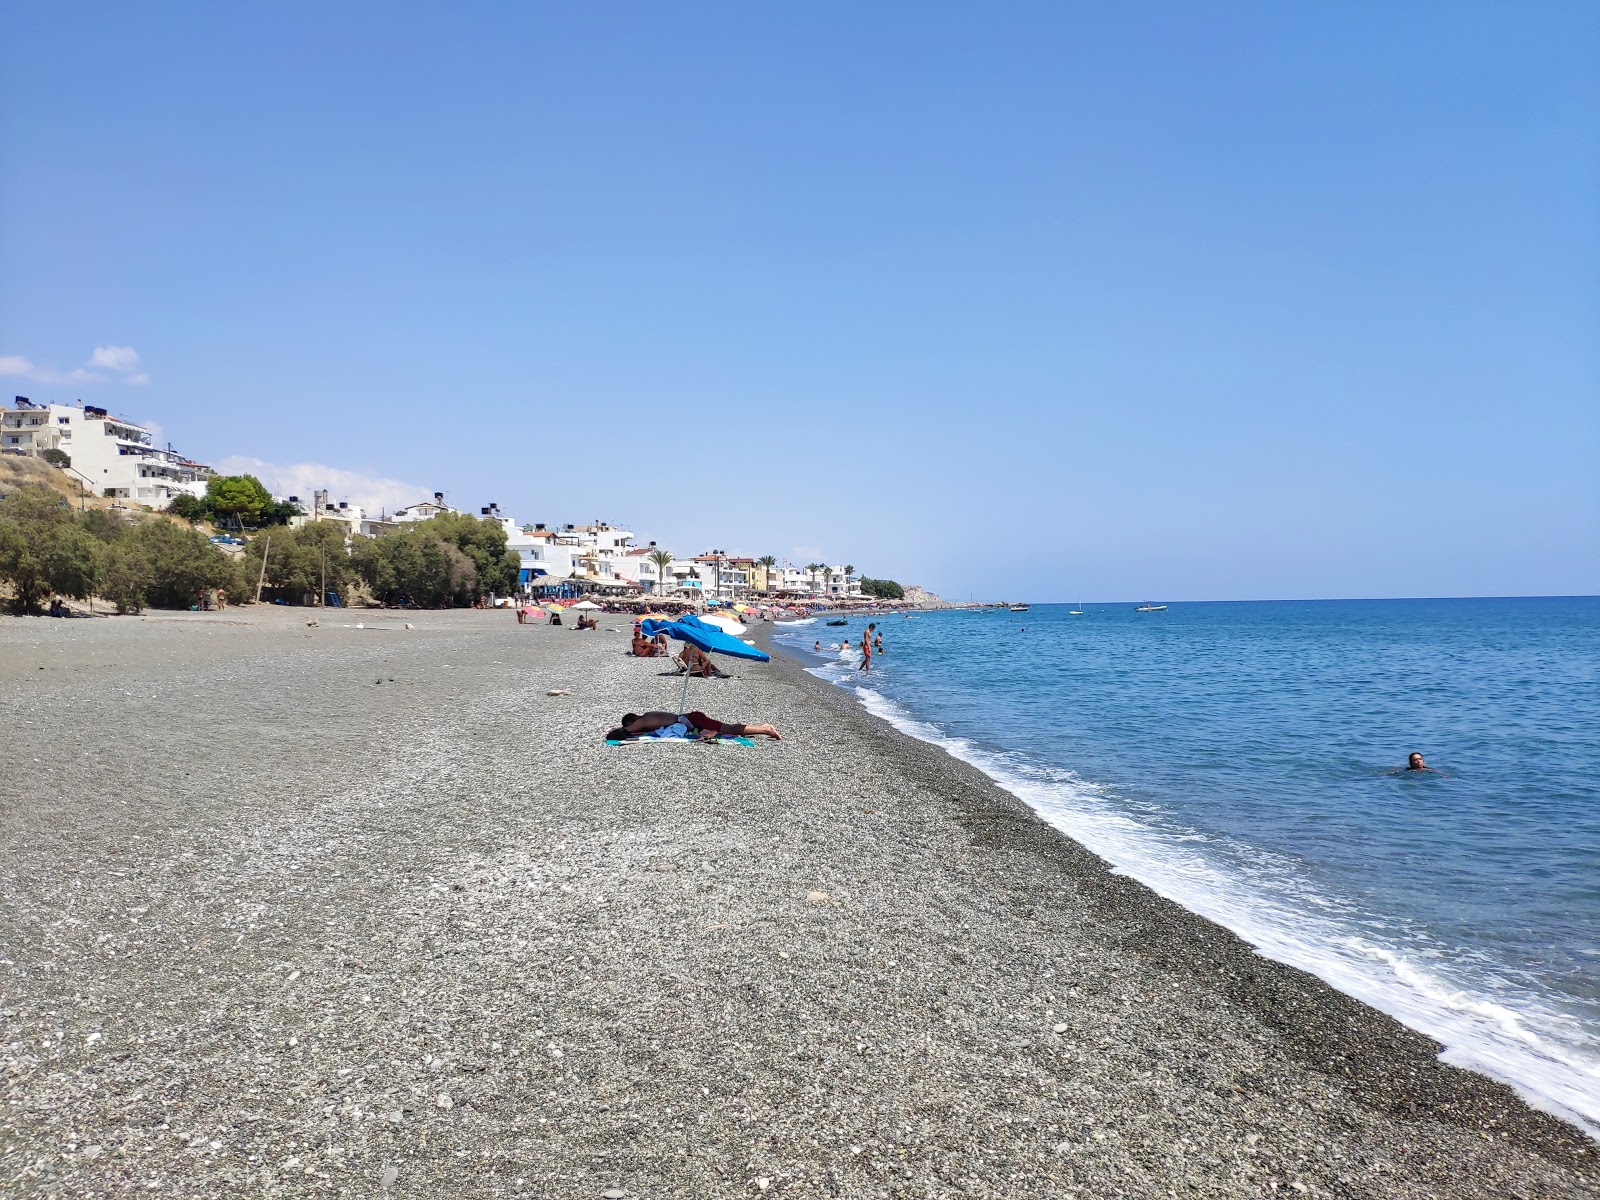 Mirtos beach'in fotoğrafı hafif ince çakıl taş yüzey ile